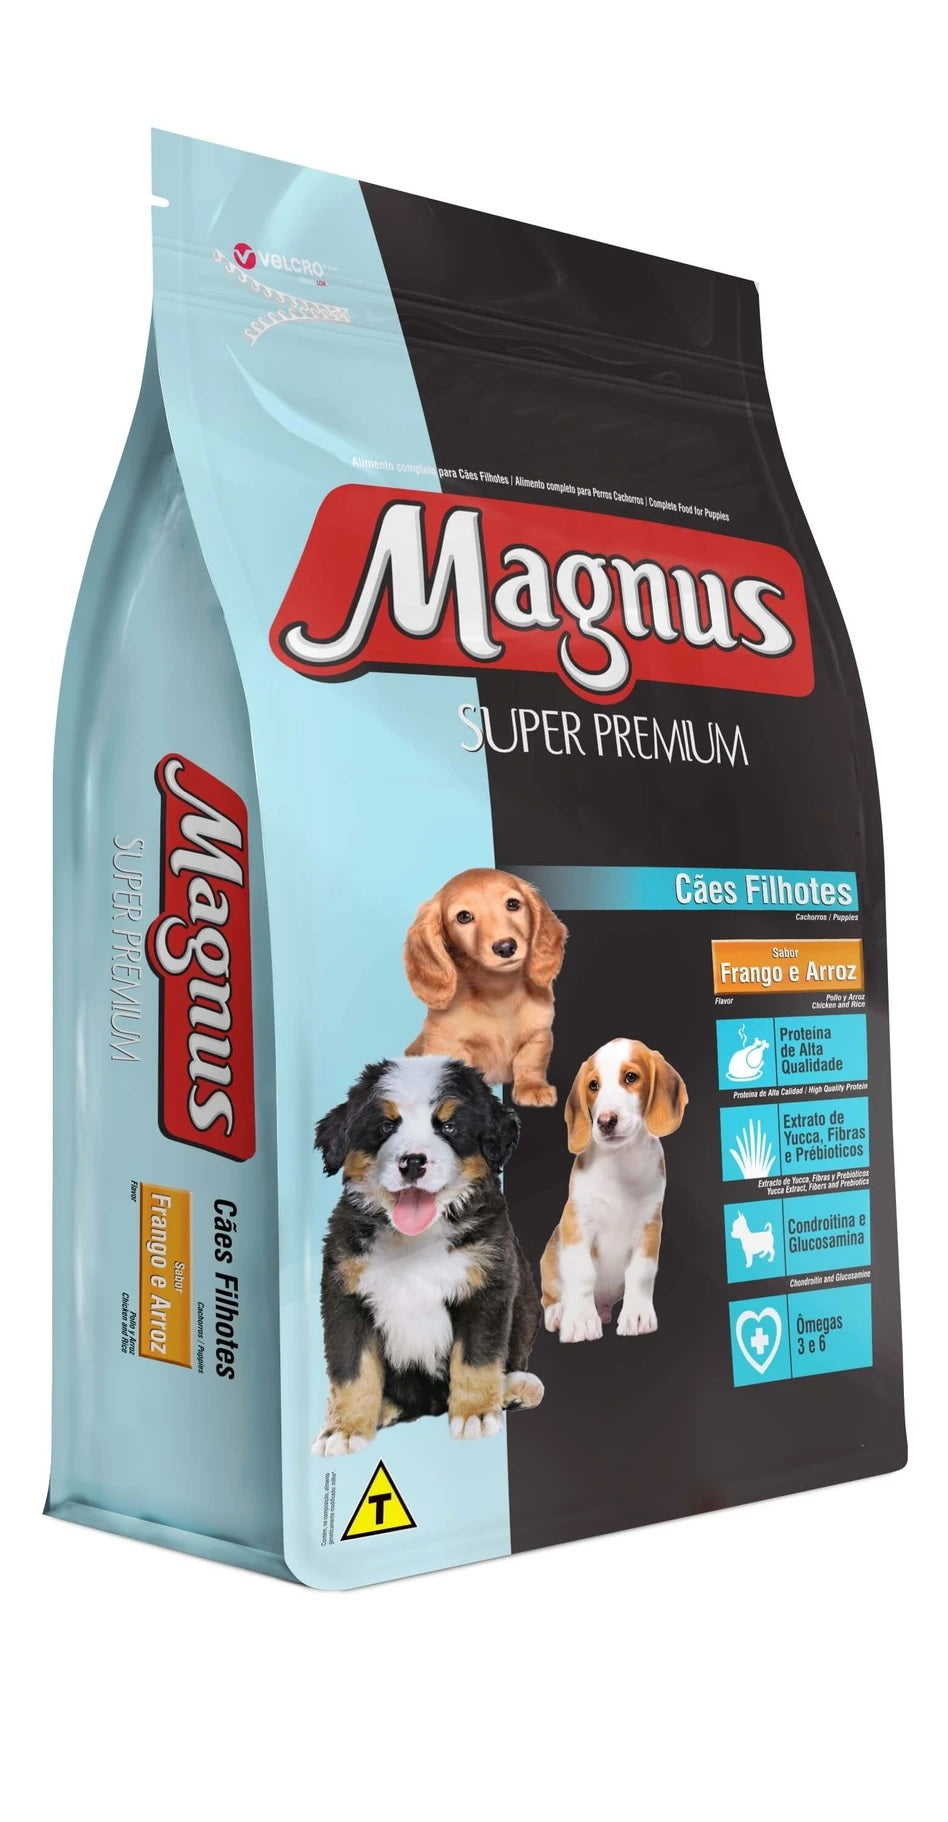 Magnus Cachorros Super Premium